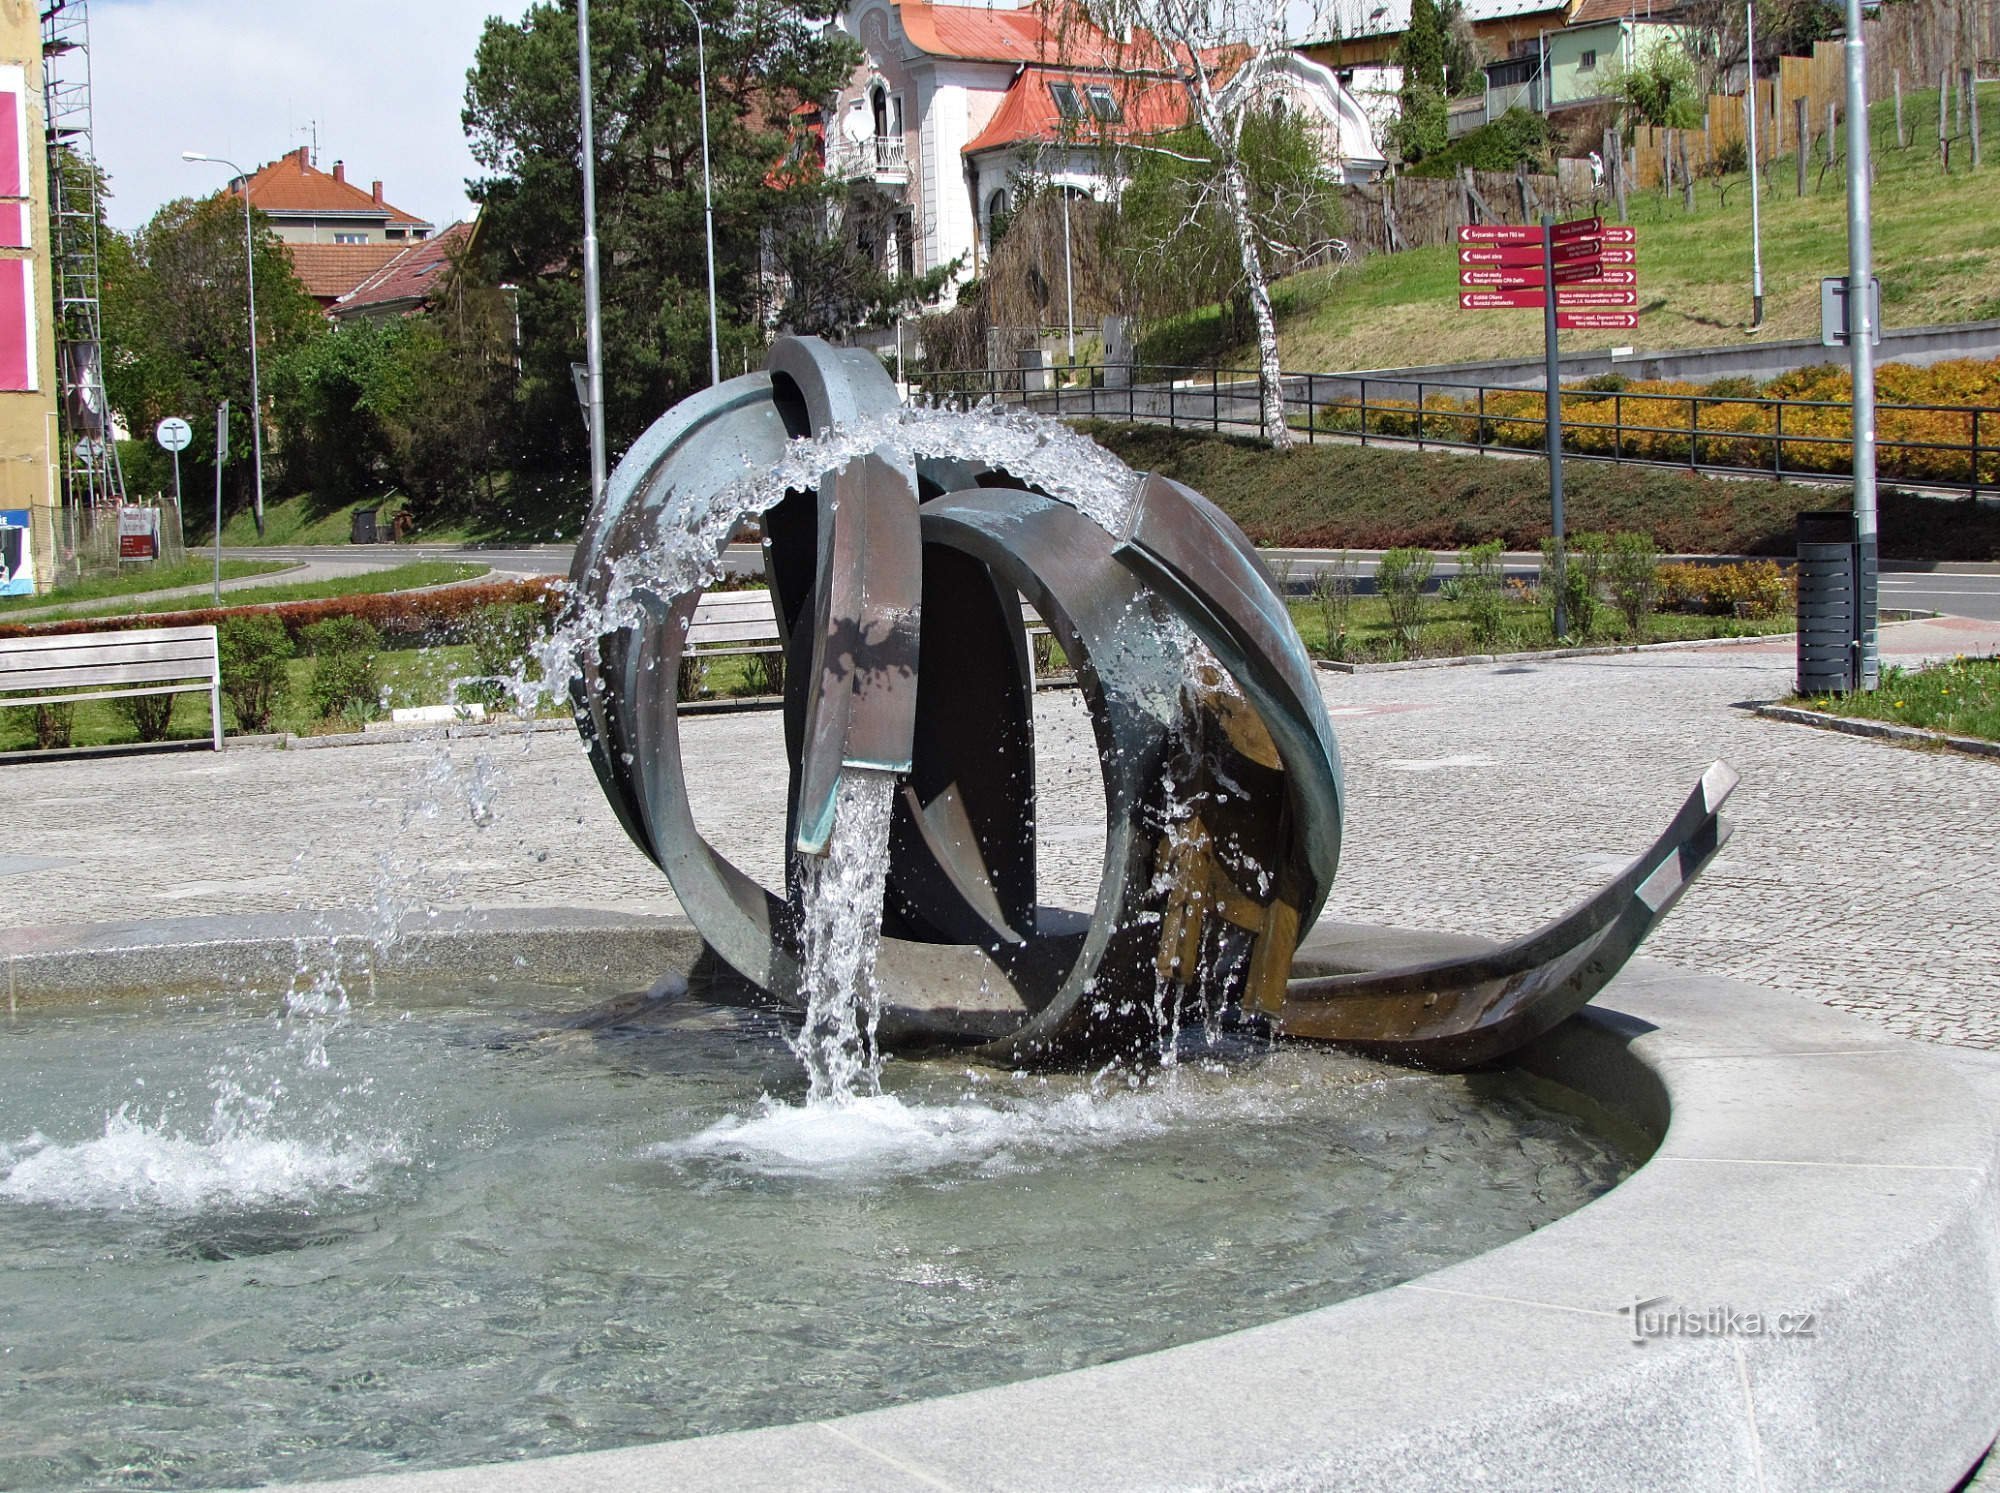 Uherský Brod - fontaine près de la gare